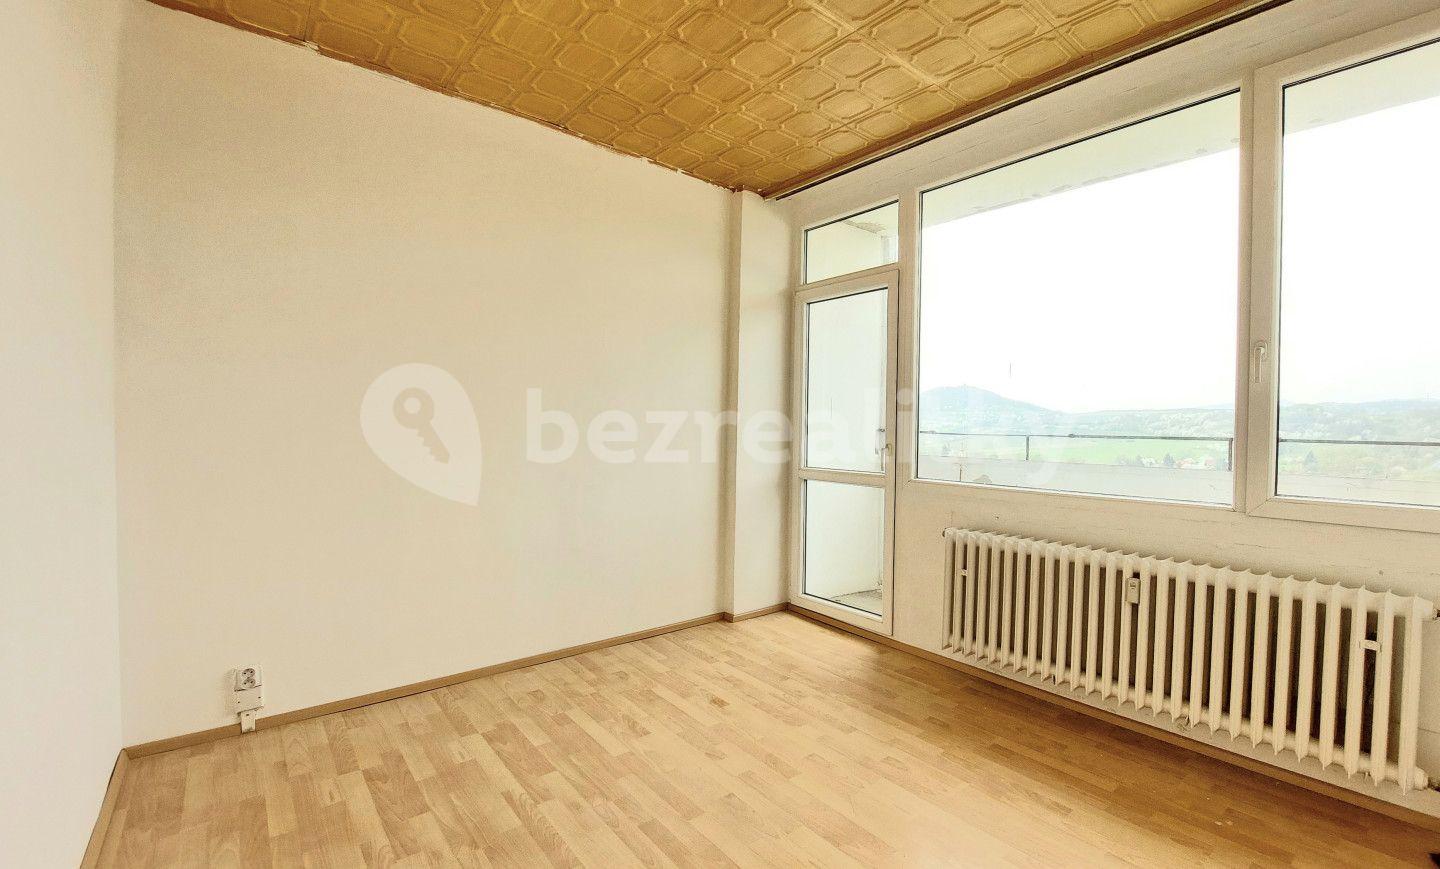 3 bedroom flat for sale, 62 m², Mírová, Klášterec nad Ohří, Ústecký Region